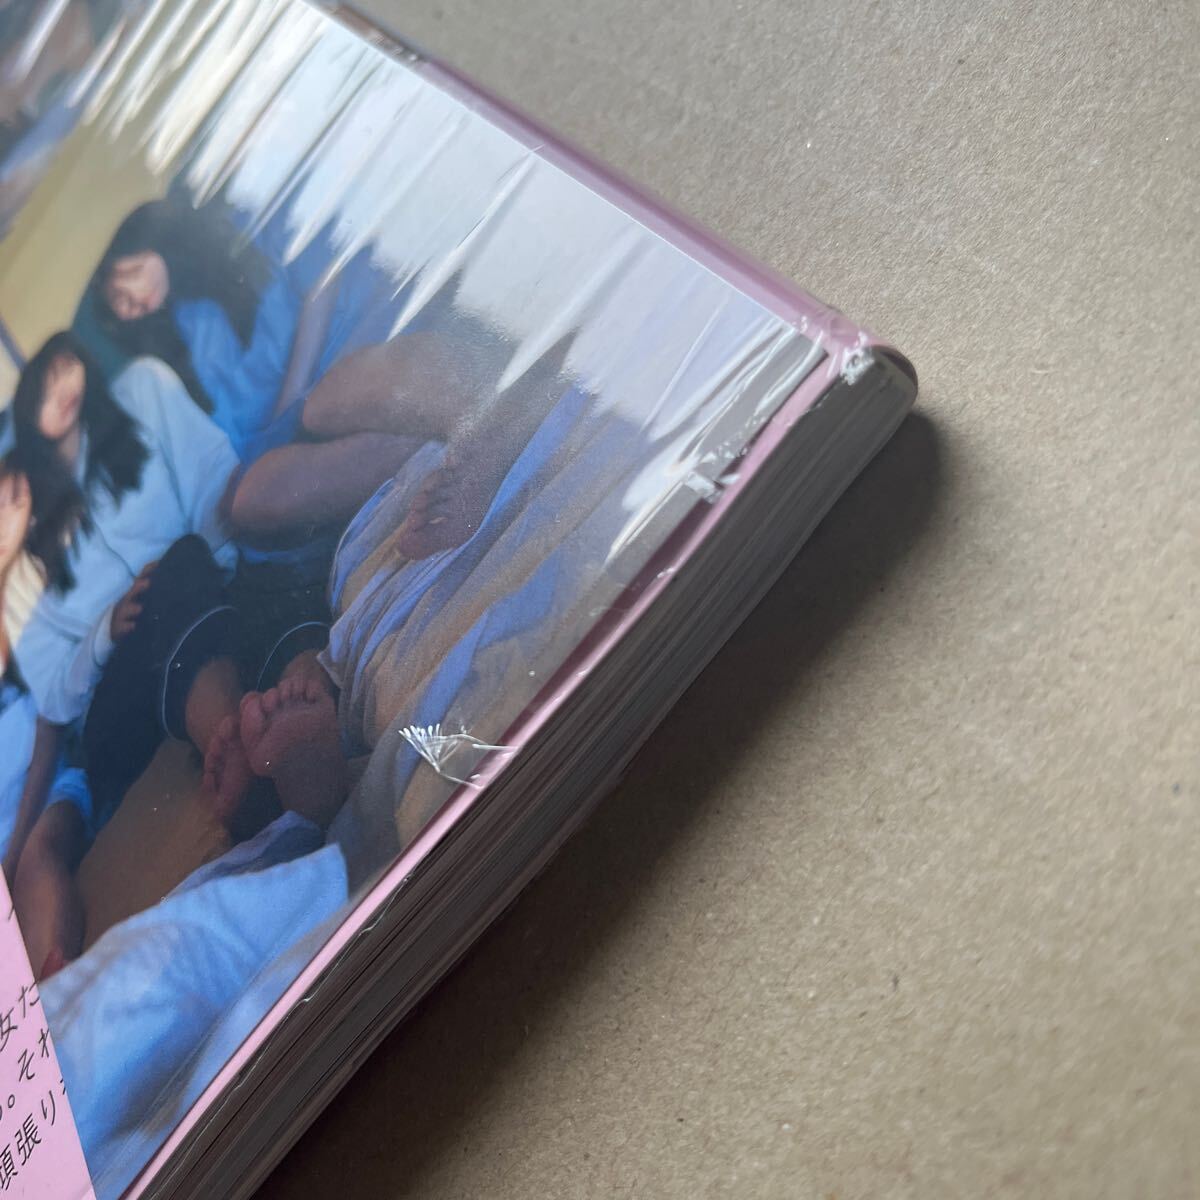 乃木坂46 5期生 写真集「あの頃、乃木坂にいた」 通常盤 封入ポスター、応募券なし 書店特典ポストカードあり 未読品_画像5